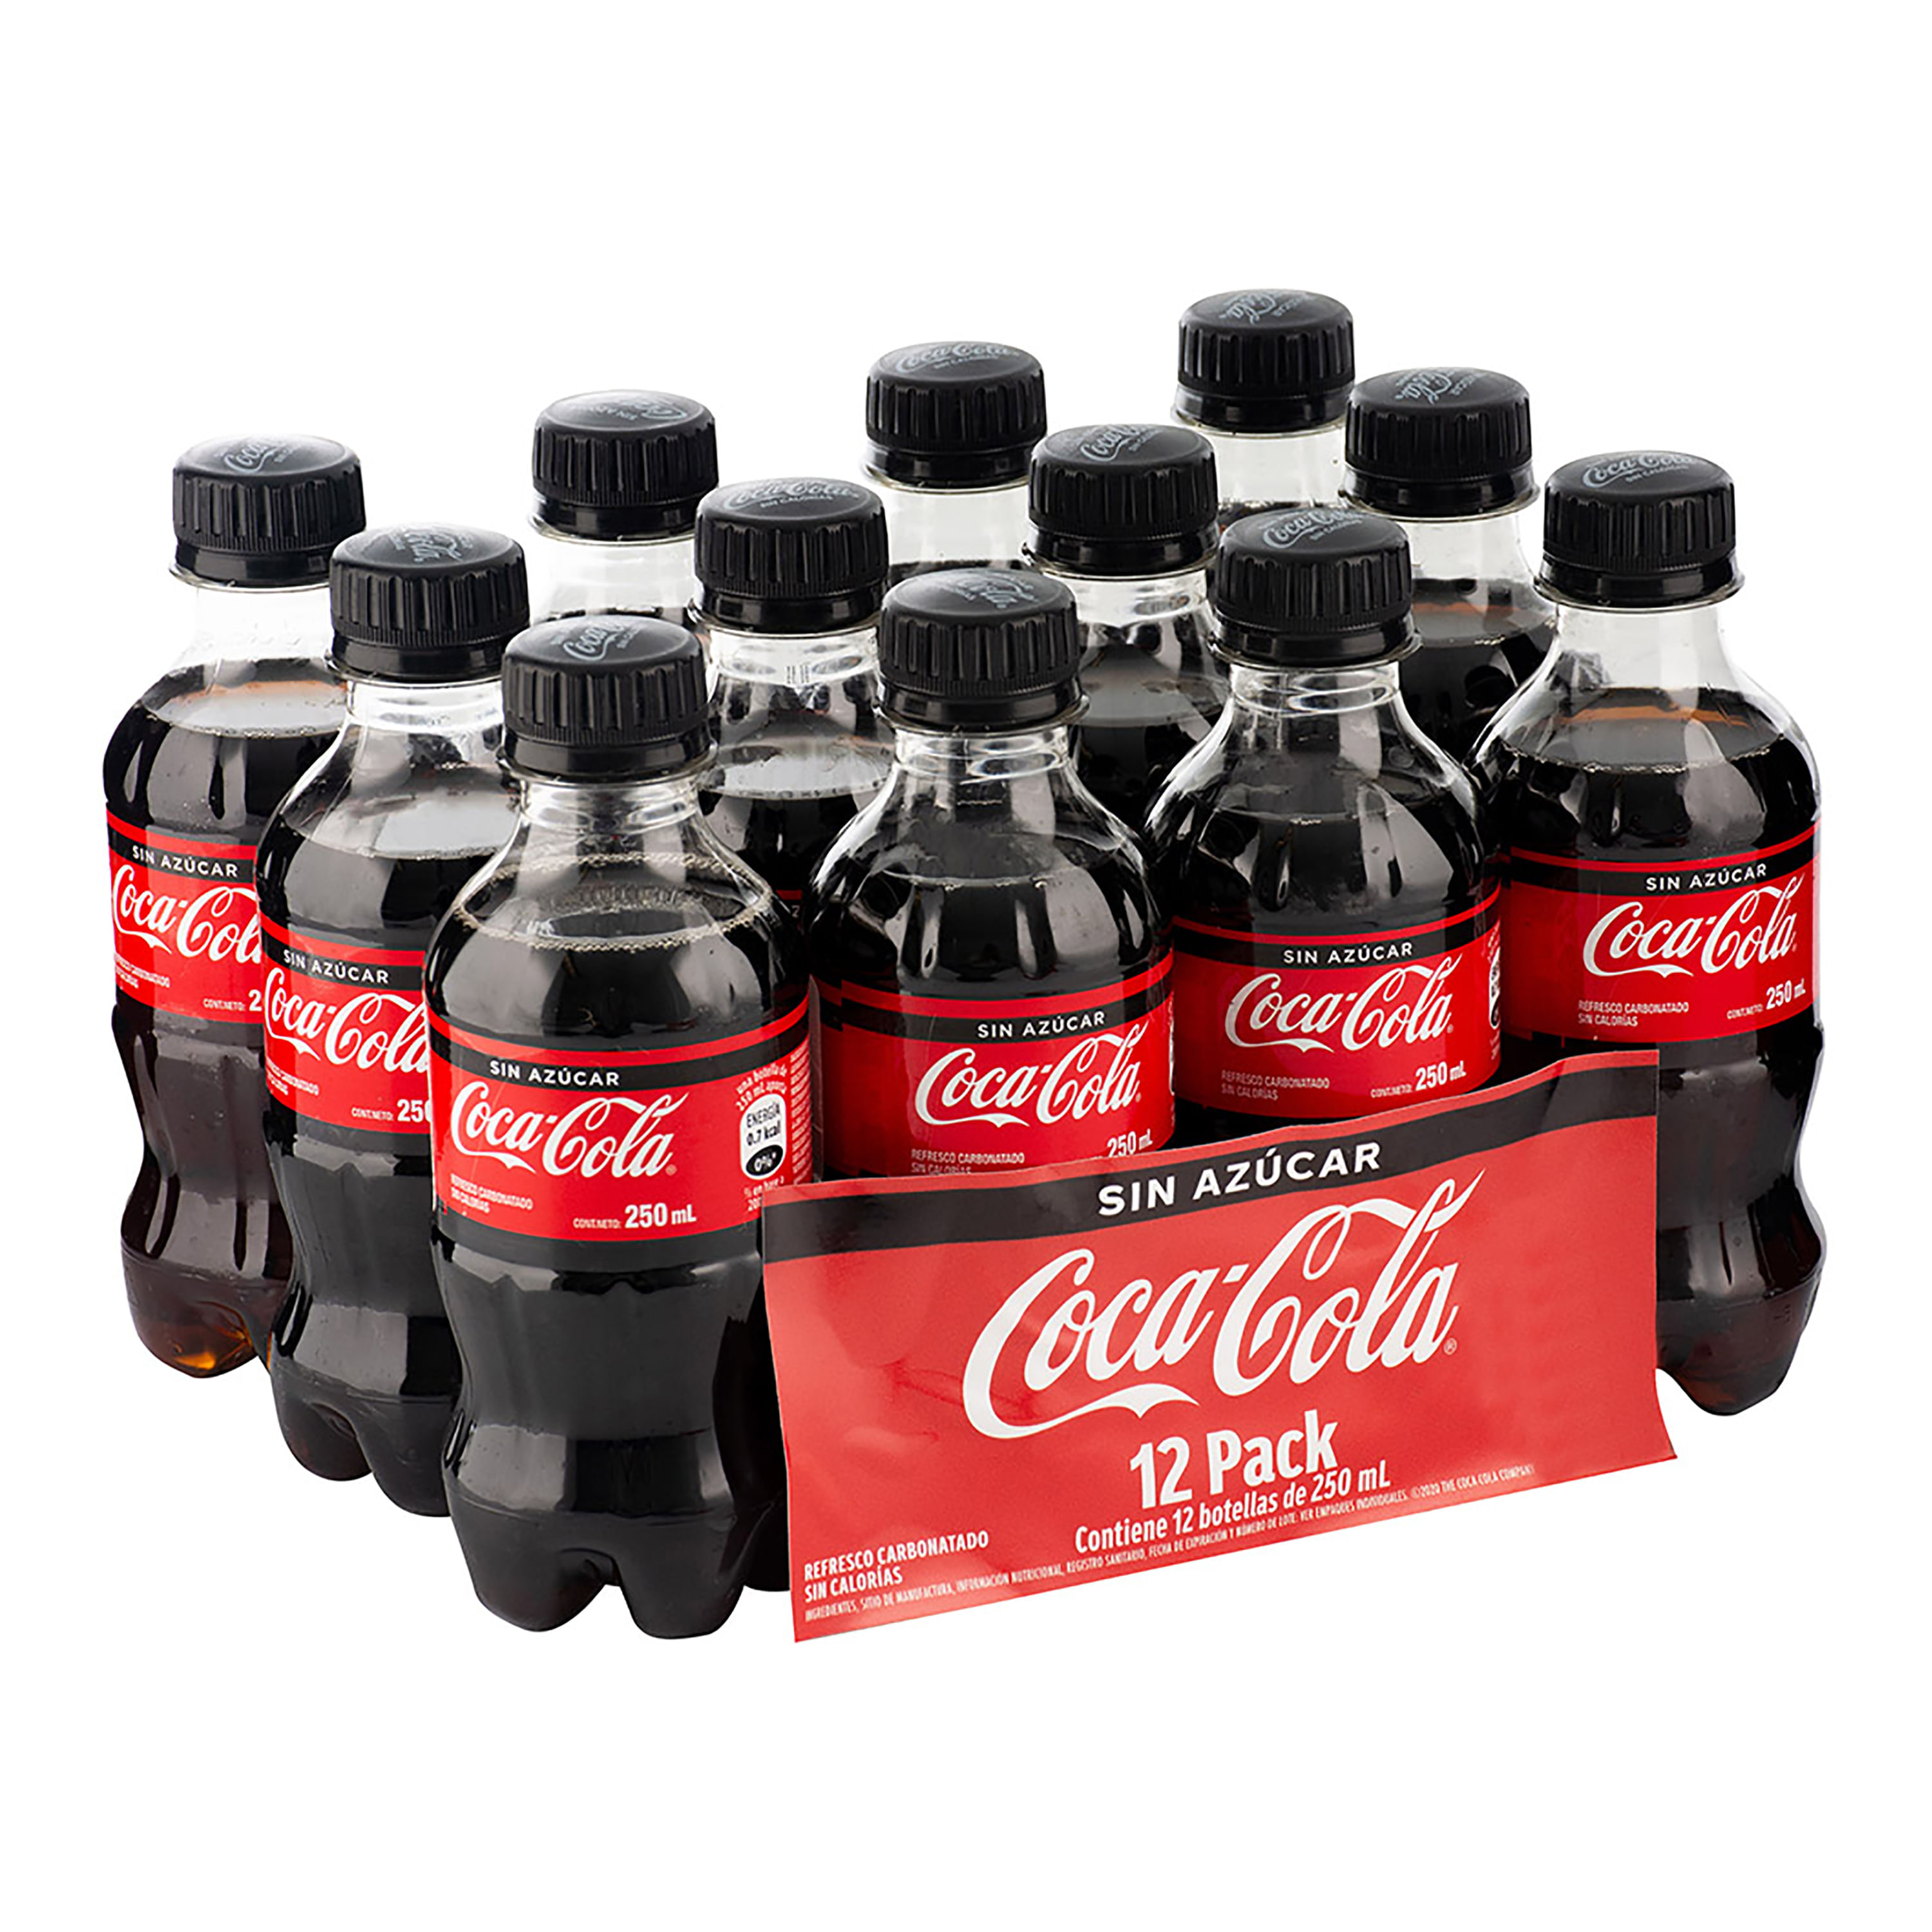 Coca-Cola Sin Azúcar 6 x 350 ml. - miCoca-Cola.cl